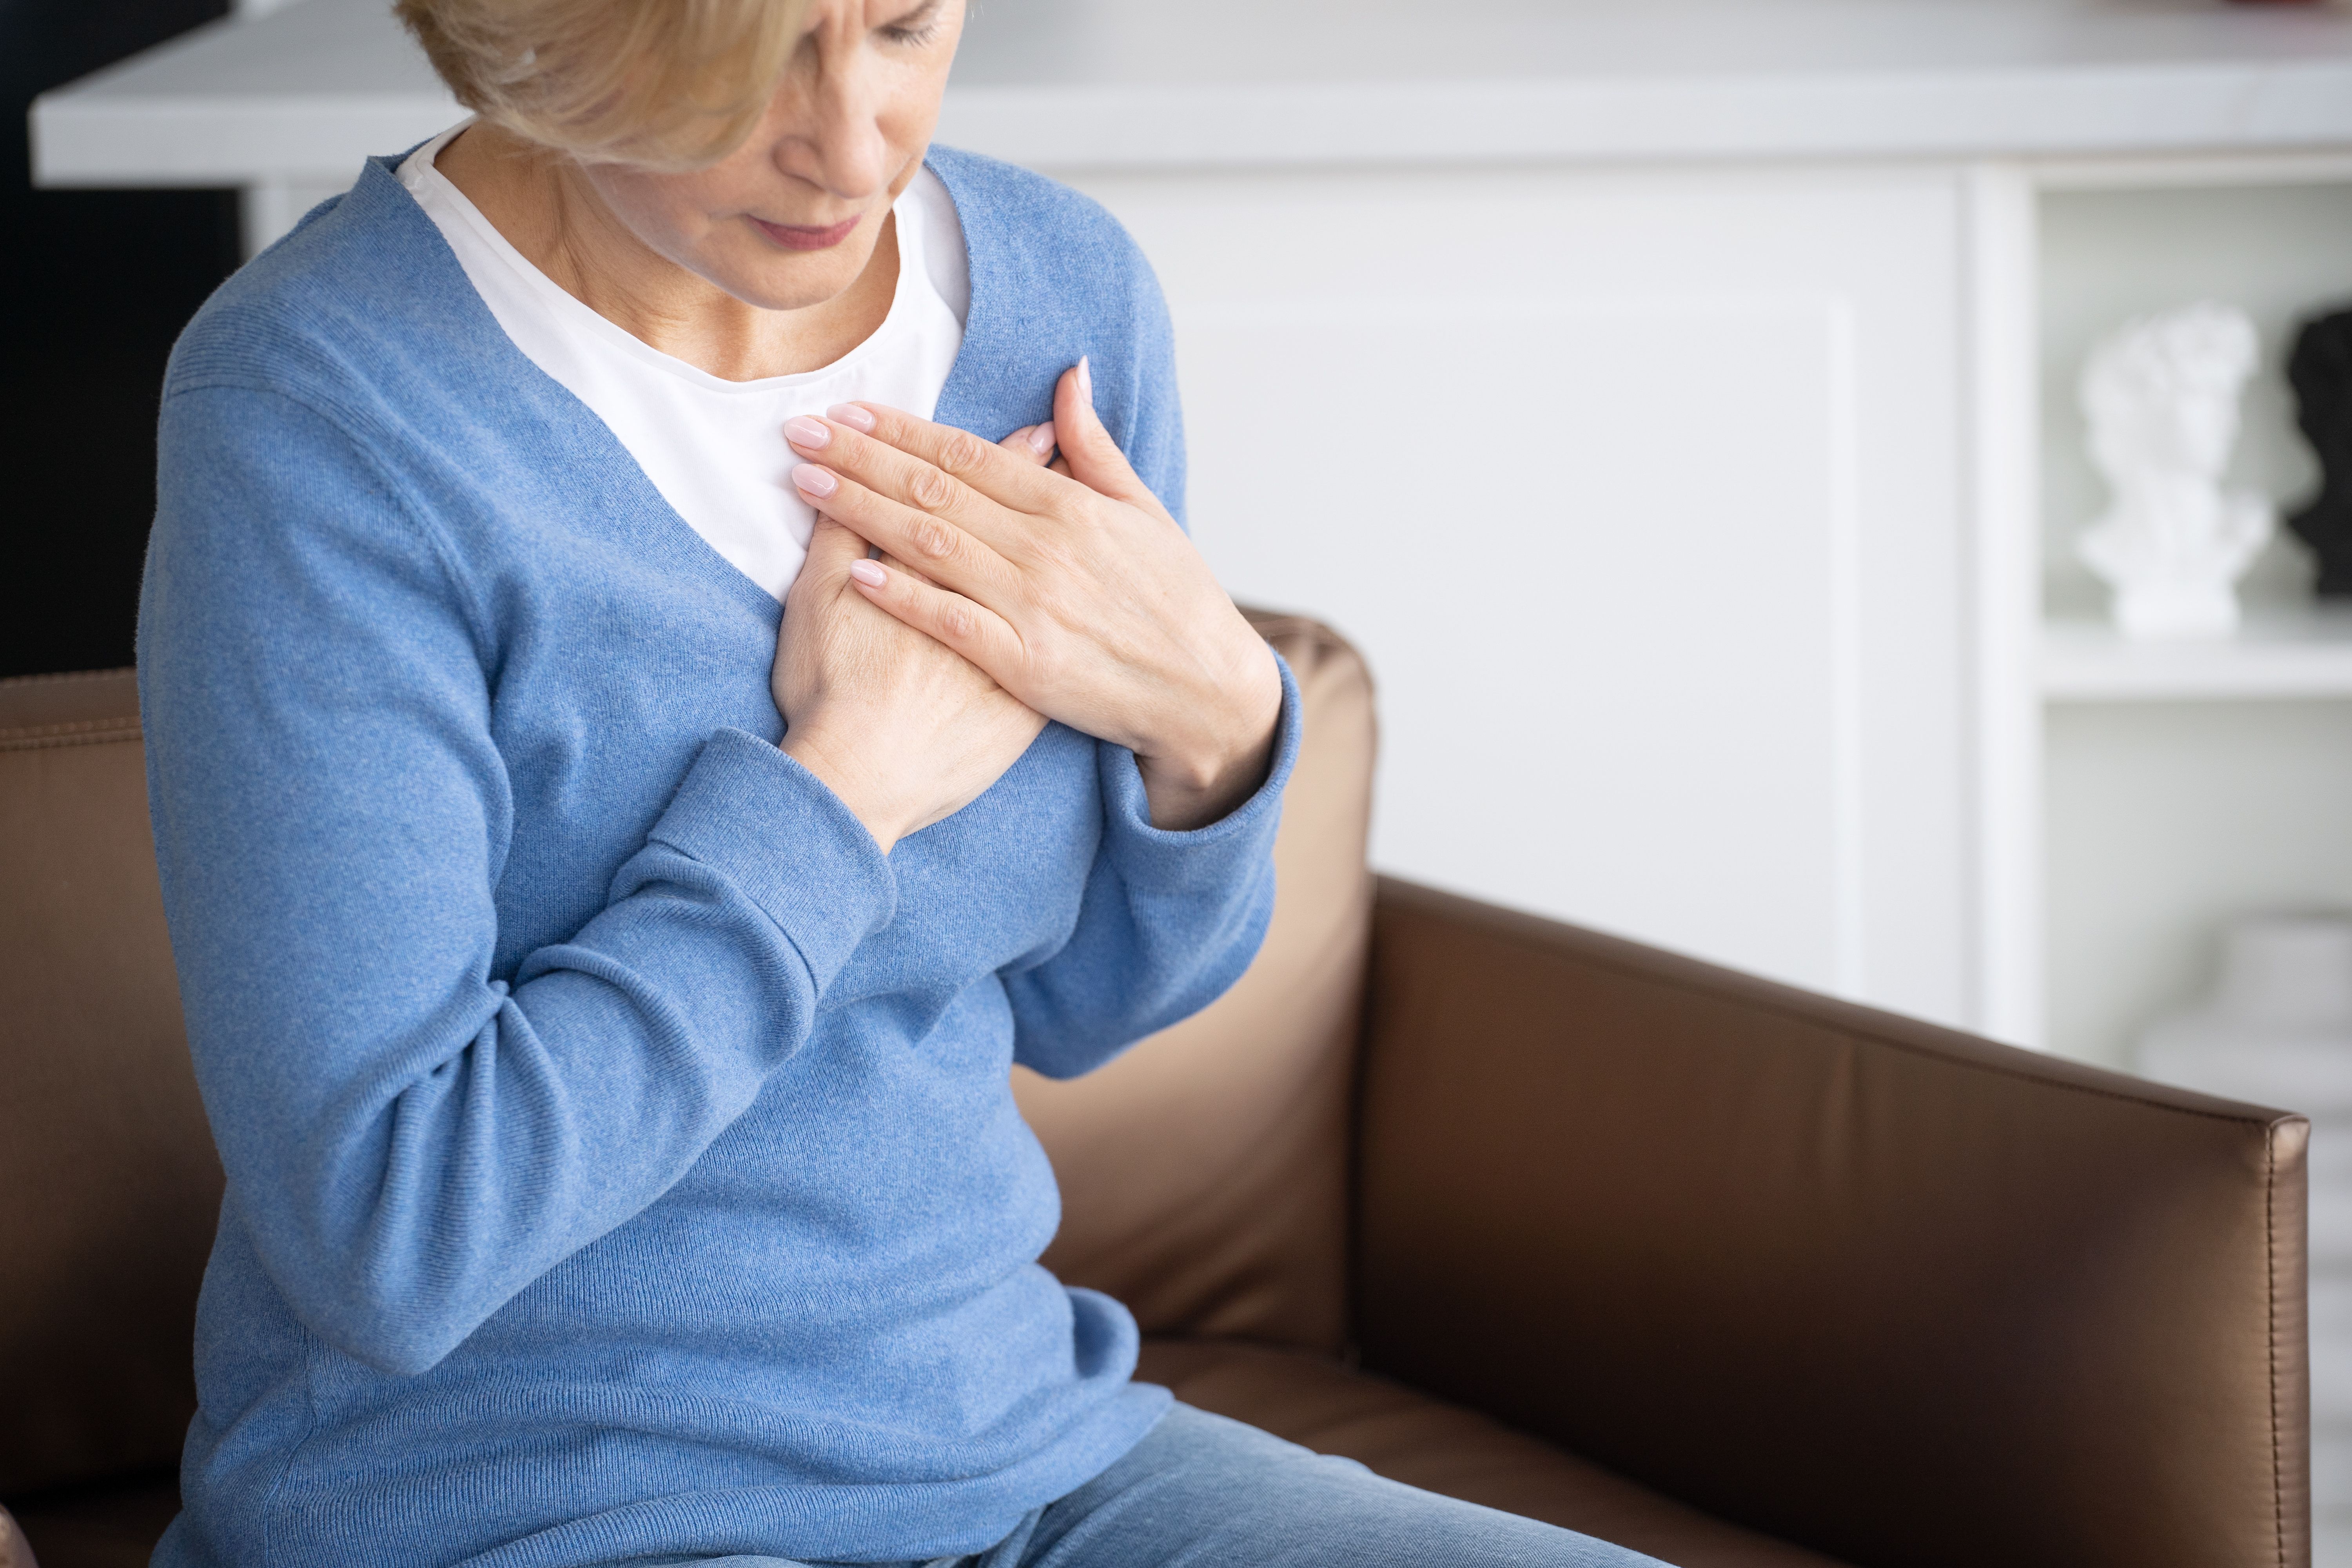 Estar sentada muchas horas aumenta el riesgo de muerte cardiovascular en mujeres mayores de 50 años. Foto: Bigstock